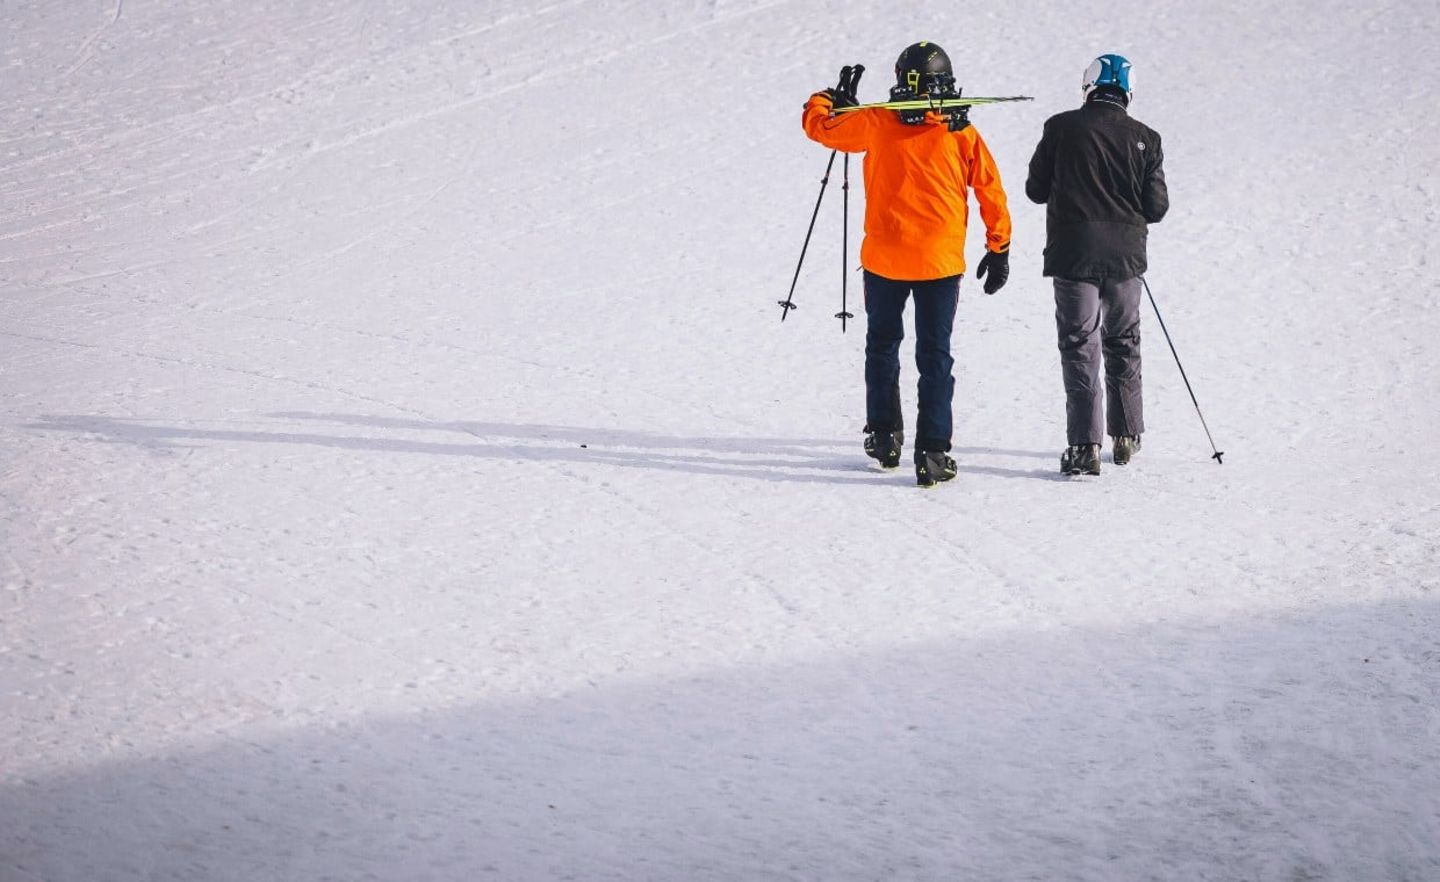 Die Regierungen von Deutschland, Italien und Frankreich fordern eine länderübergreifende Schließung der Skigebiete